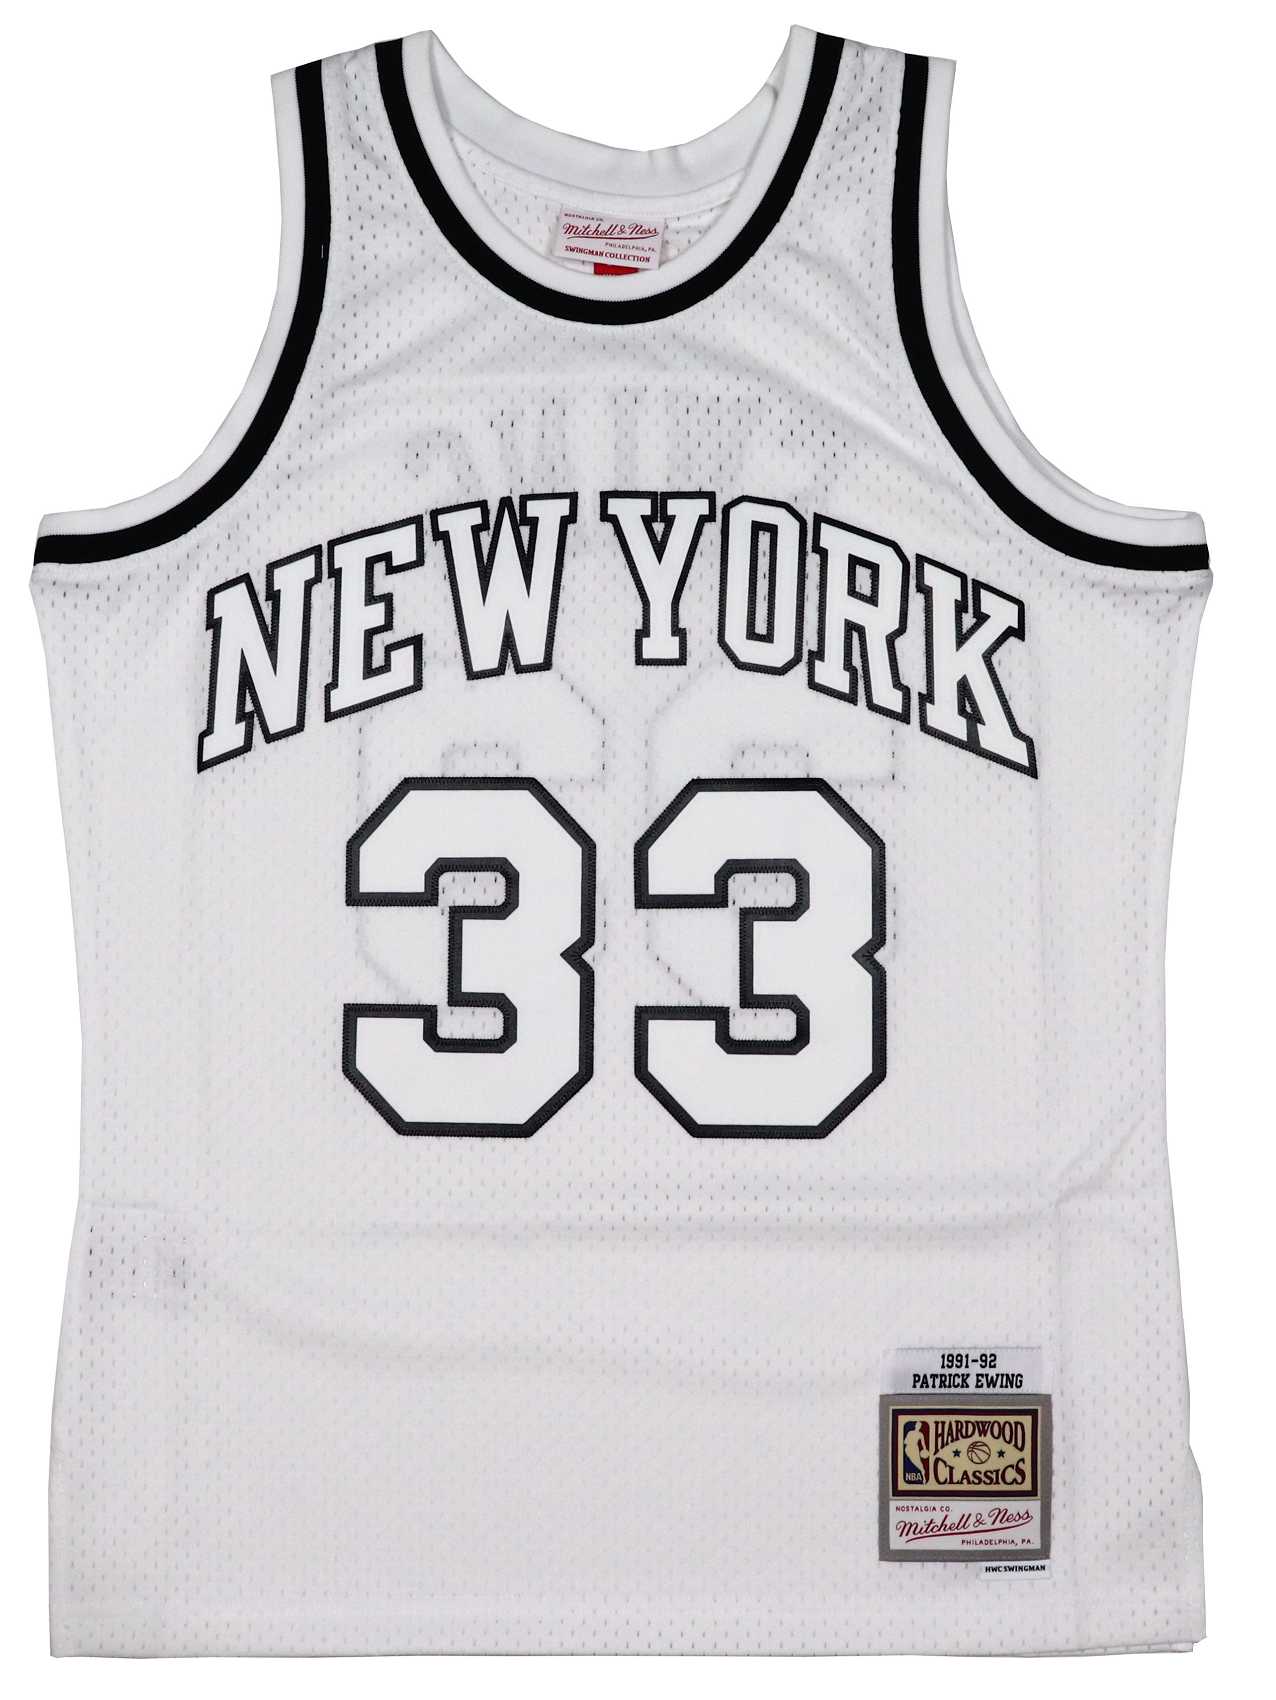 Patrick Ewing #33 New York Knicks NBA White Swingman Jersey Mitchell & Ness